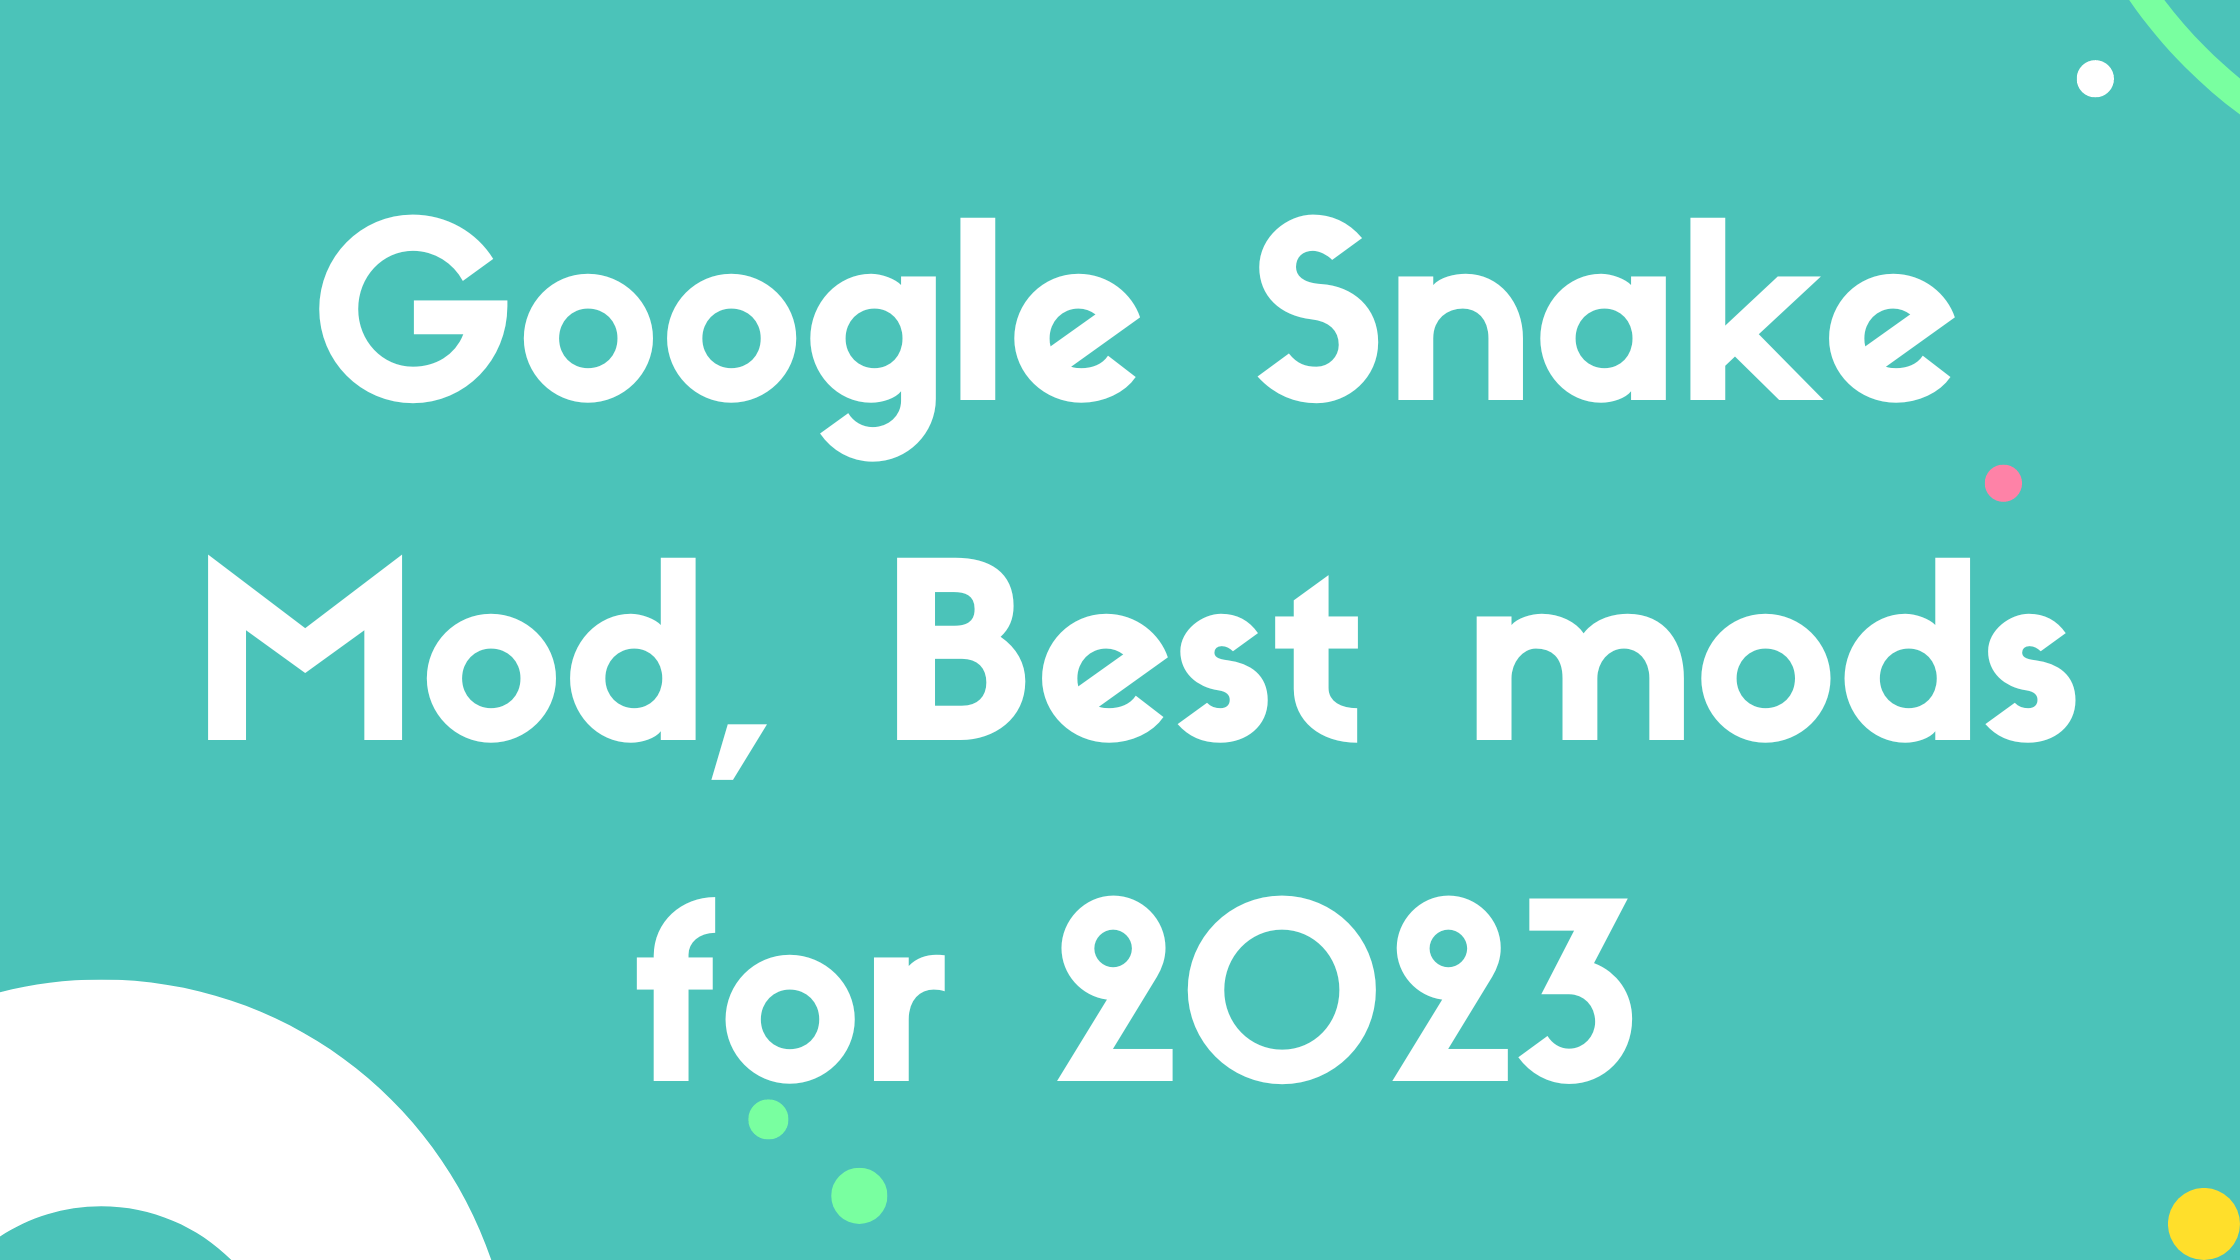 Google Snake Mod, Best mods for 2023